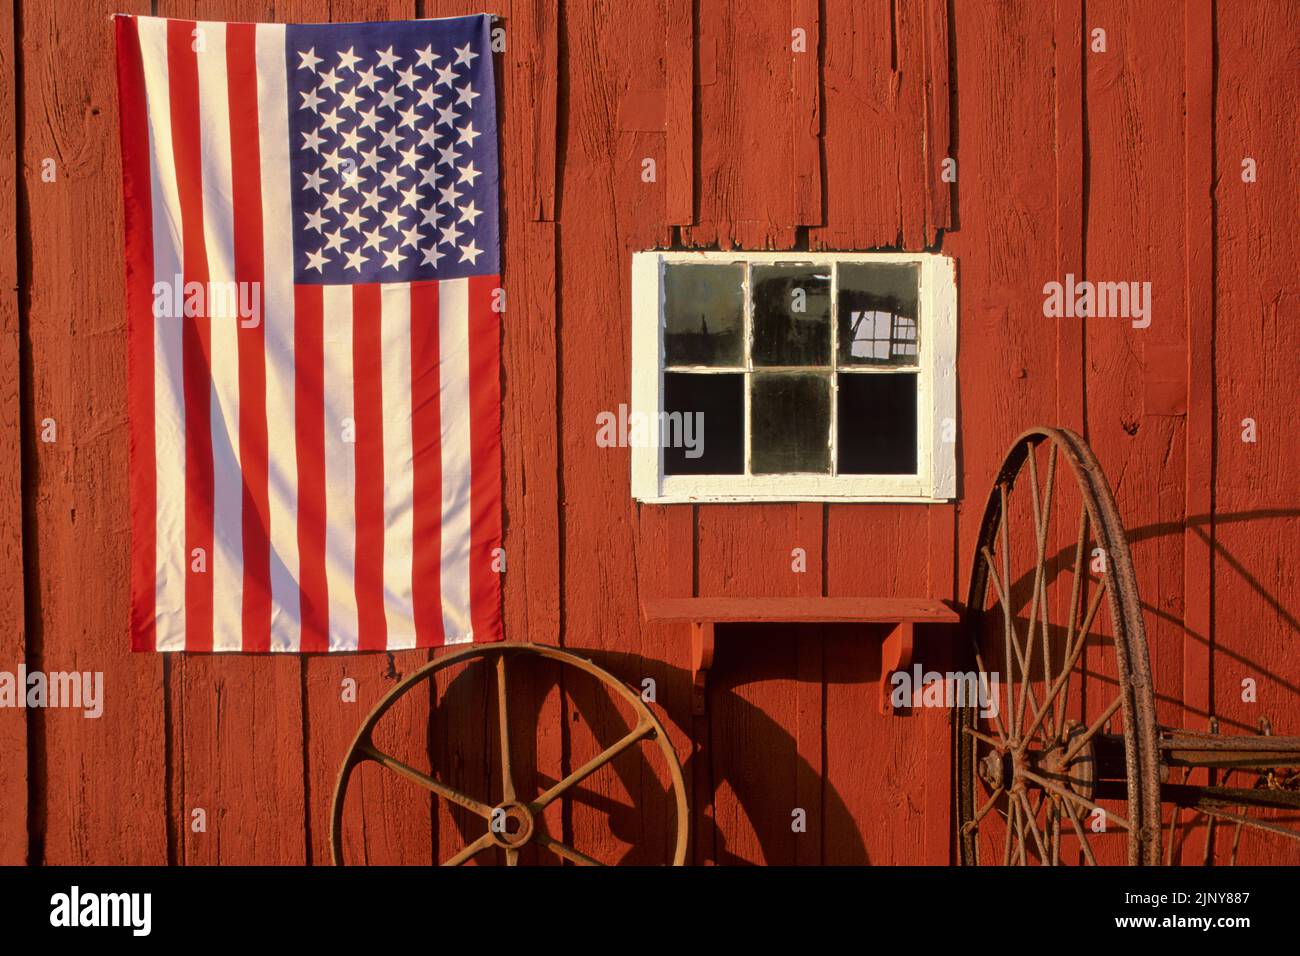 Amerikanische Flagge auf einer alten roten Scheune mit einem Fenster, Heurechen und Rad, Monroe, New Jersey, USA US NJ USA Vintage Farming close up Stockfoto